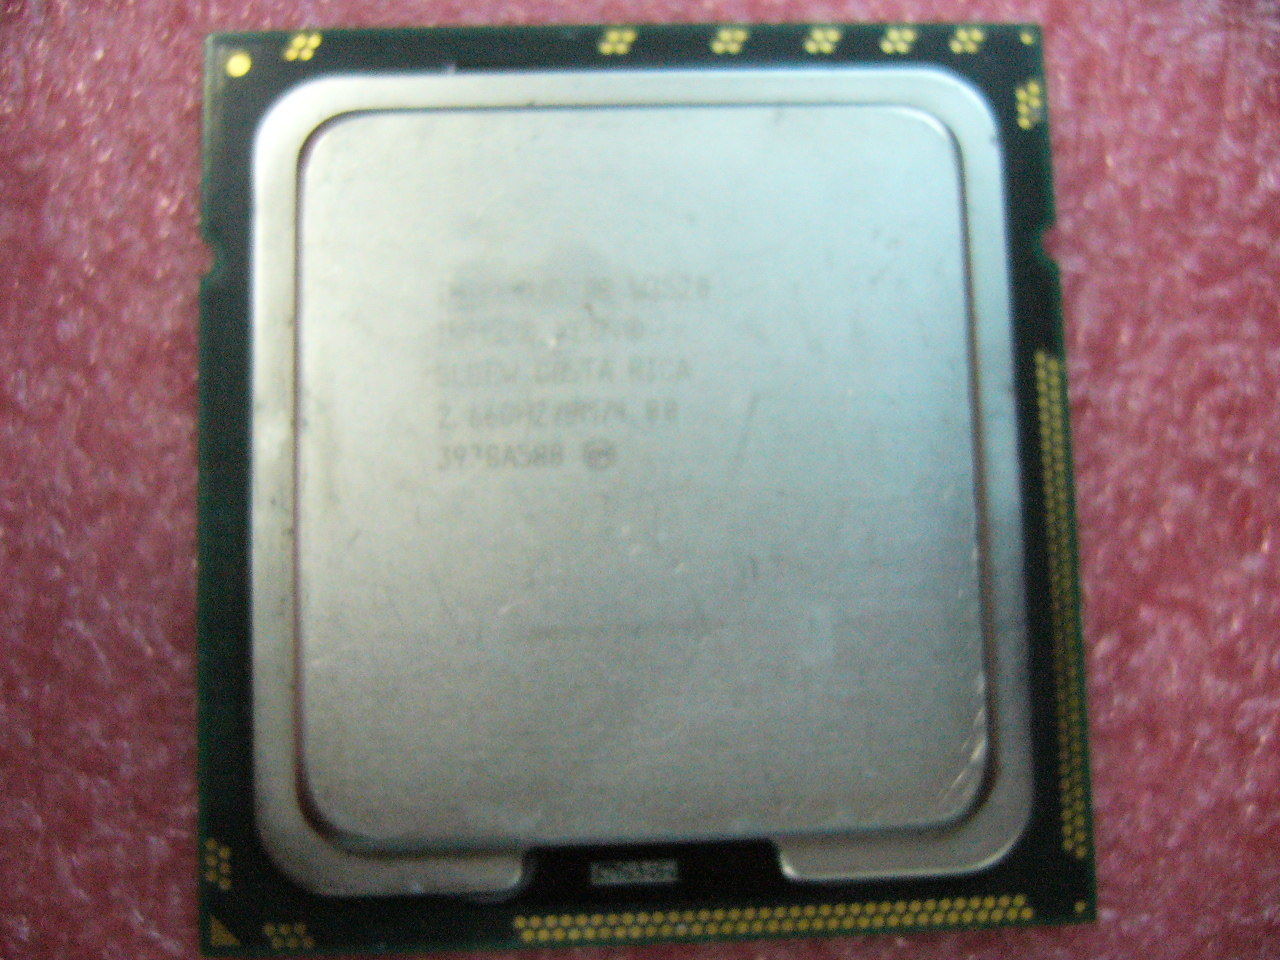 QTY 1x INTEL Quad-Cores CPU W3520 2.66GHZ/8MB 4.8GT/s QPI LGA1366 SLBEW - Click Image to Close